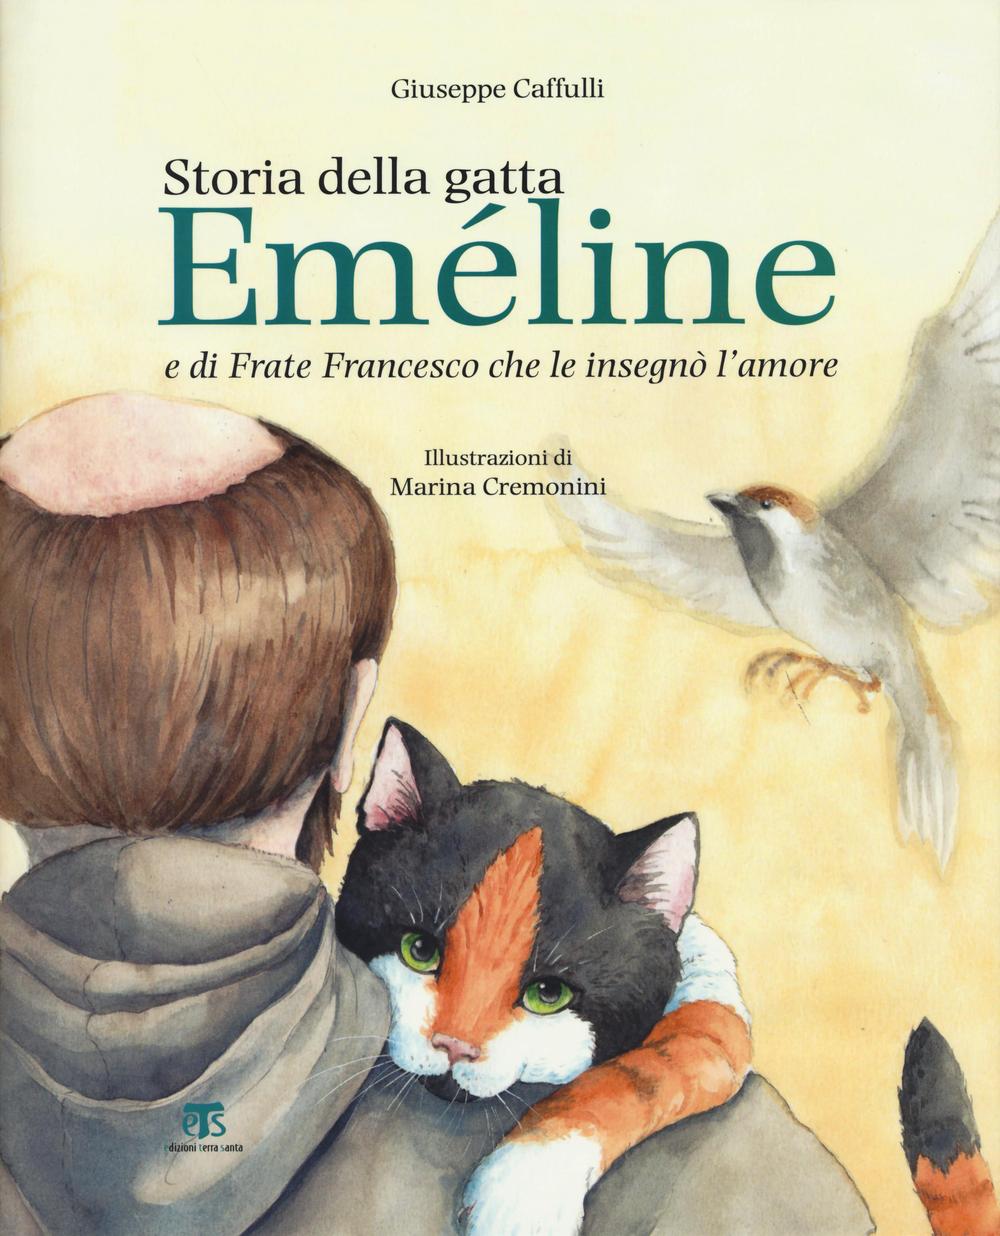 Storia della gatta Eméline e di frate Francesco che le insegnò l'amore